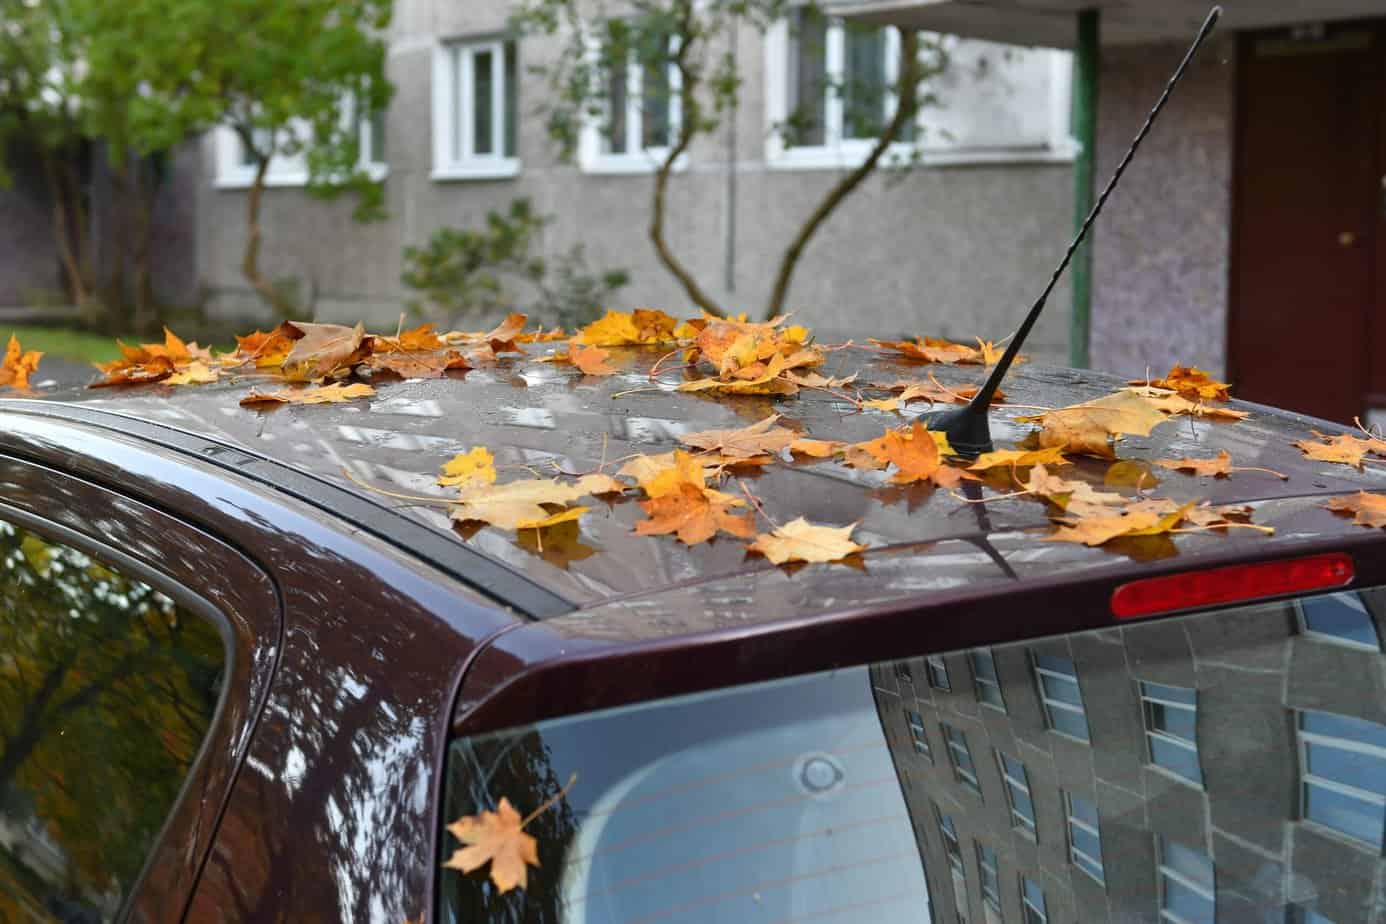 Fahrzeug auf Herbst und Winter vorbereiten – So klappt es